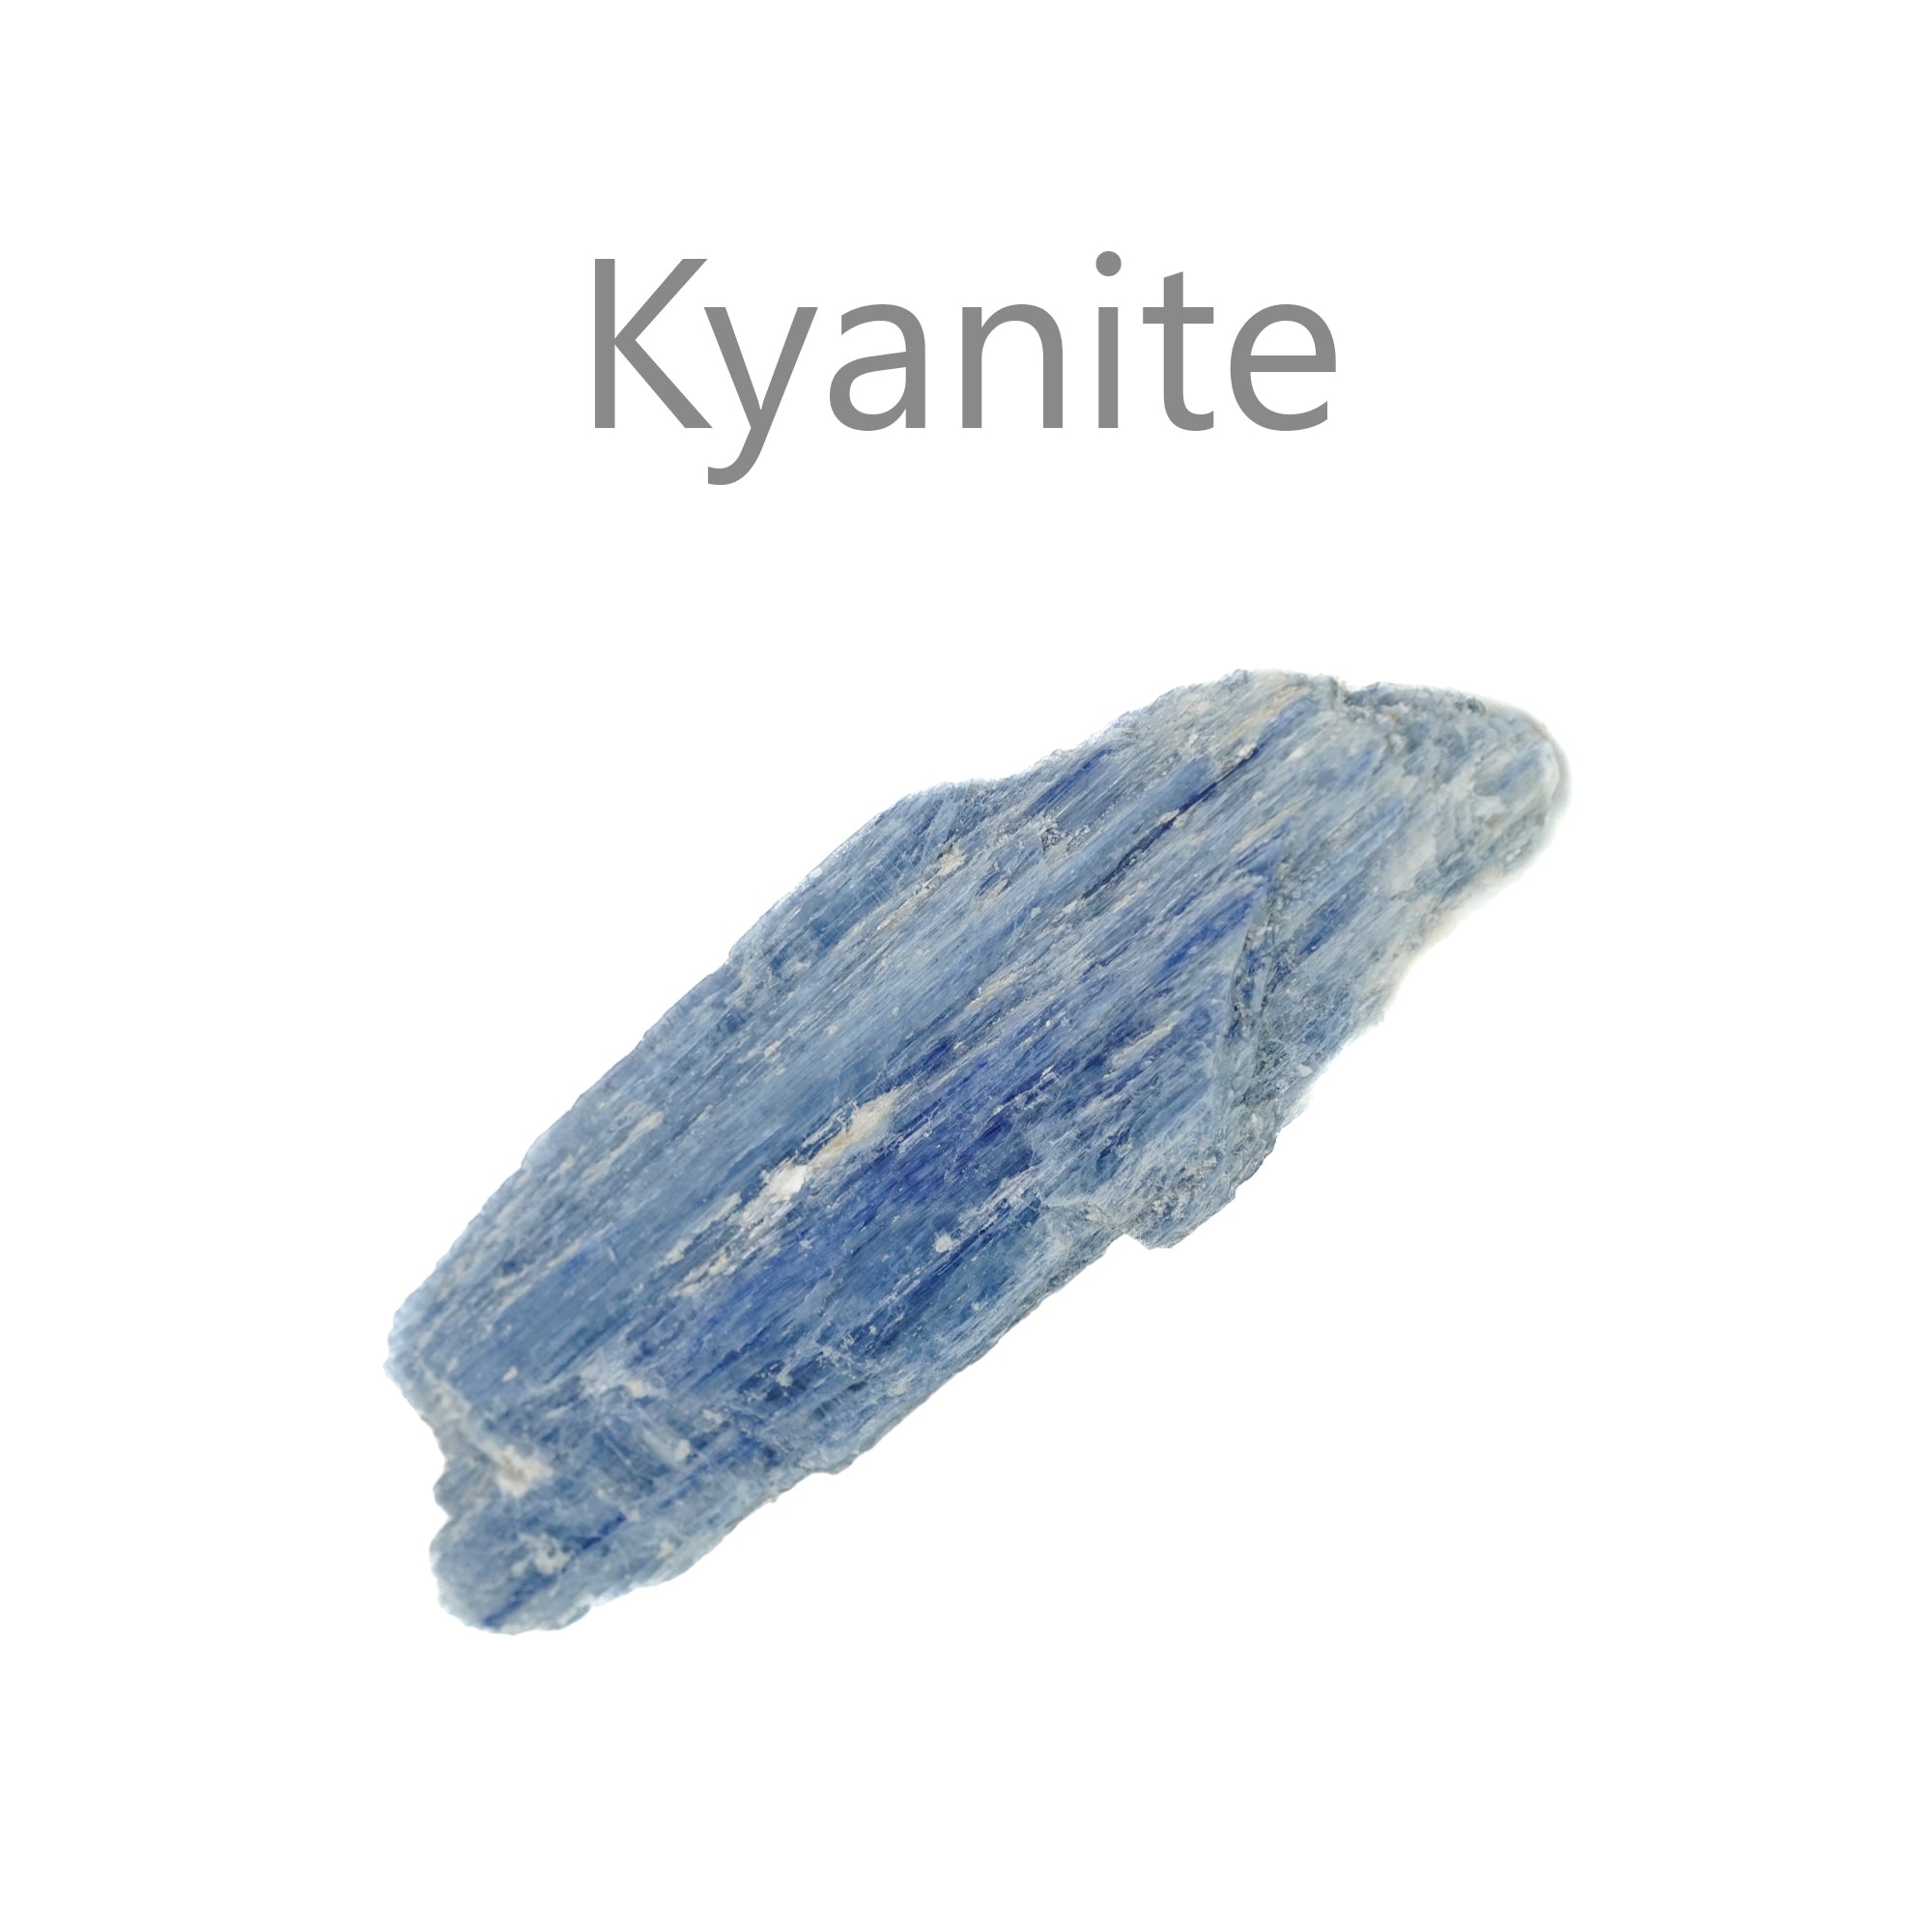 kyanite